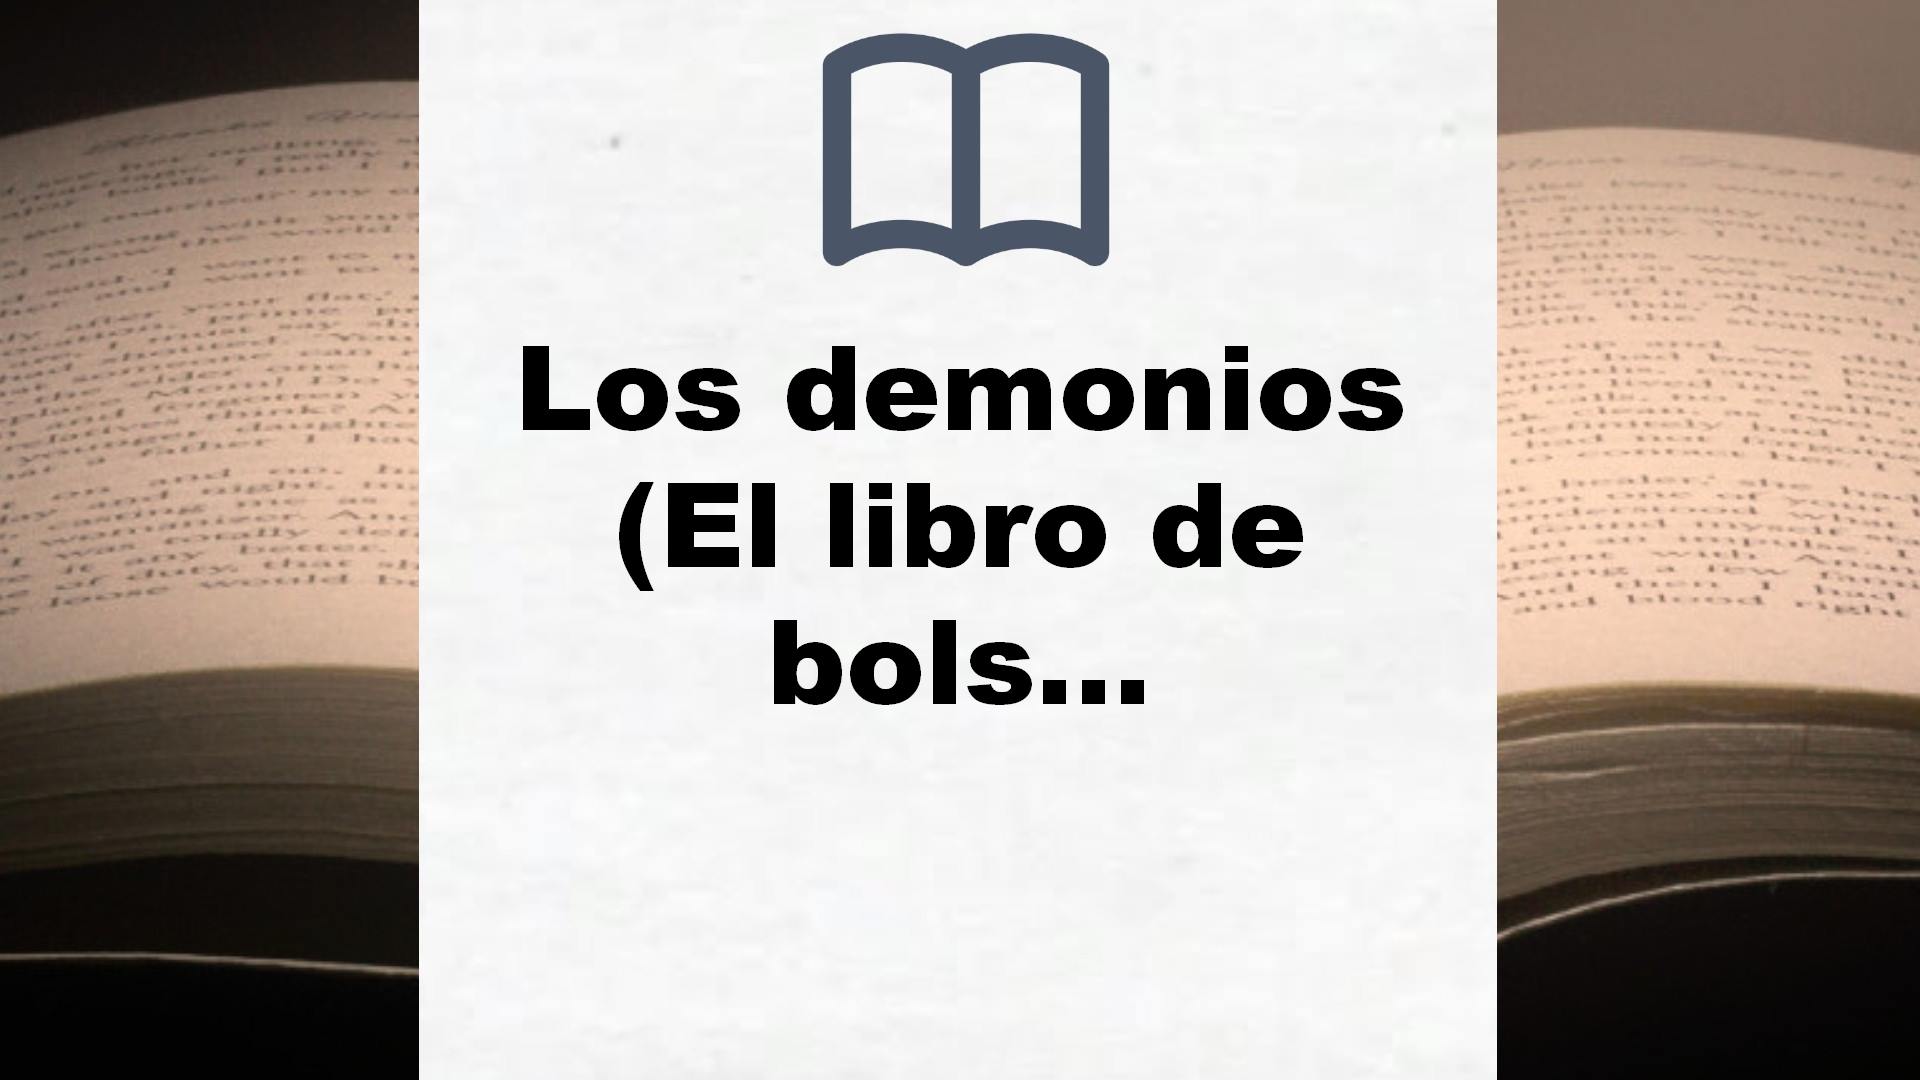 Los demonios (El libro de bolsillo – Bibliotecas de autor – Biblioteca Dostoyevski) – Reseña del libro